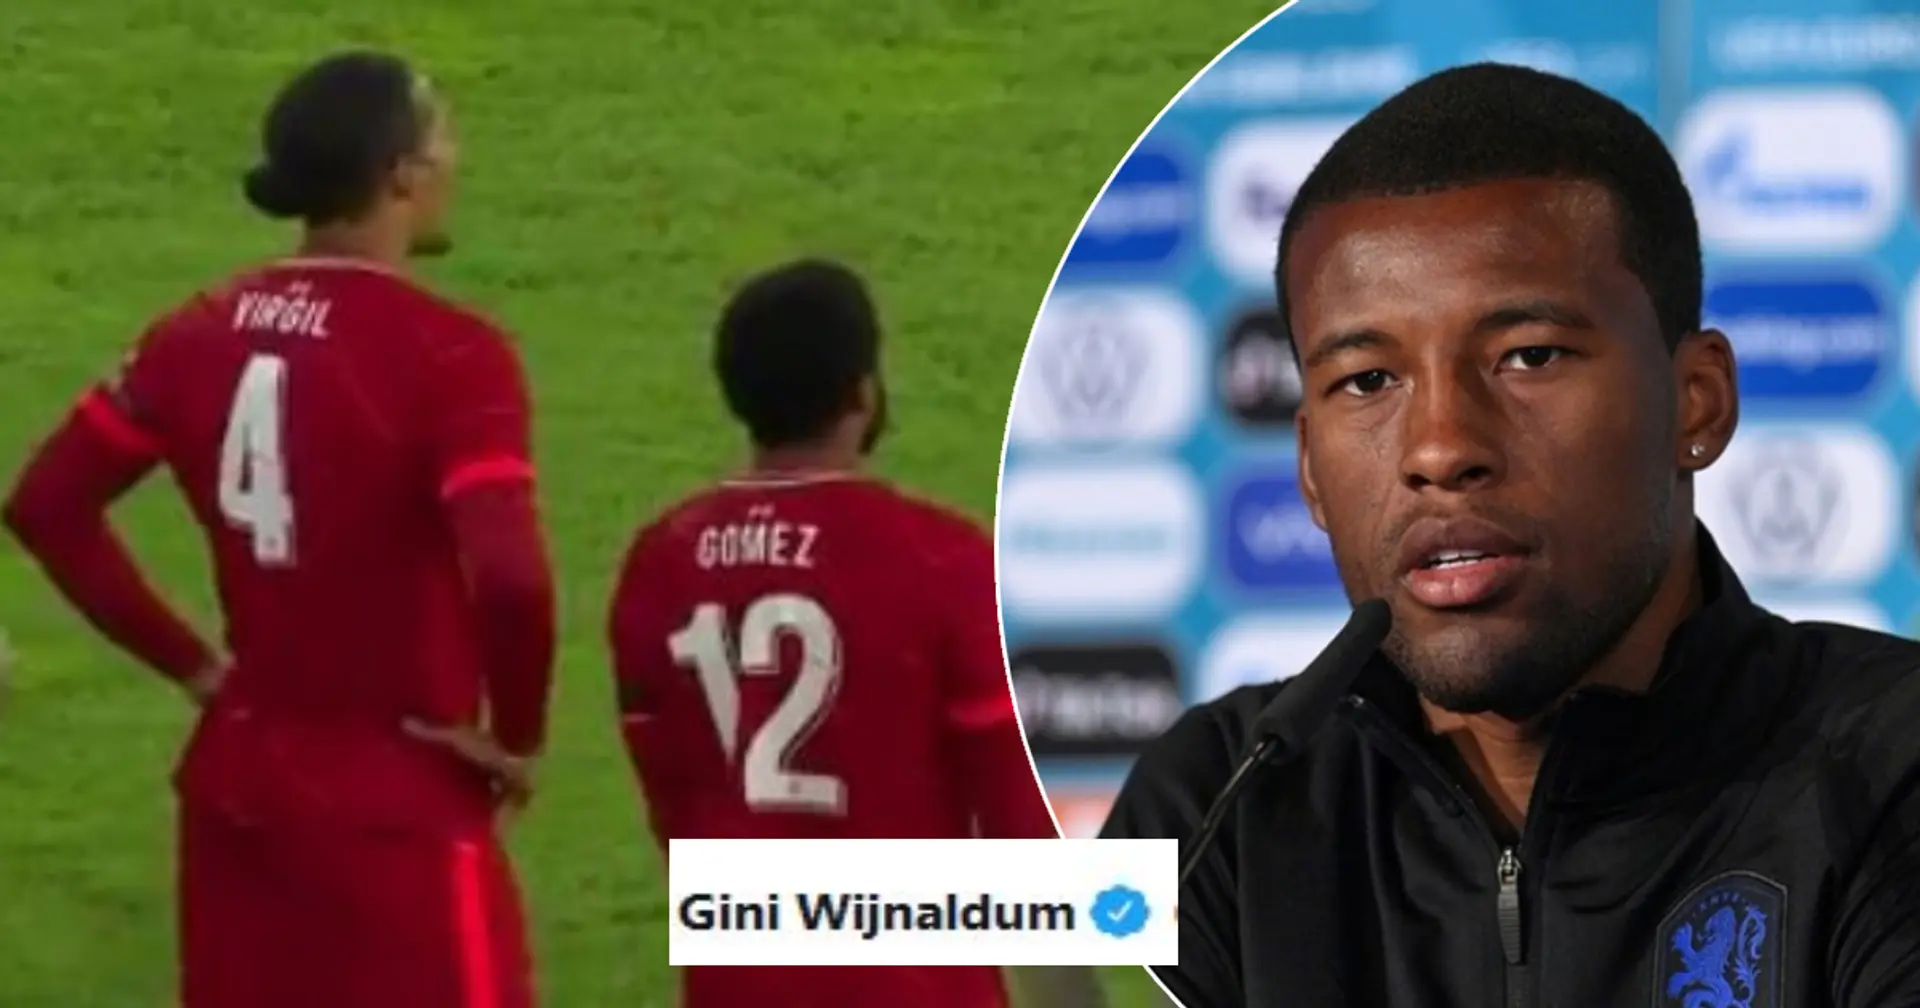 Wijnaldum reacts to Van Dijk and Gomez return from injury